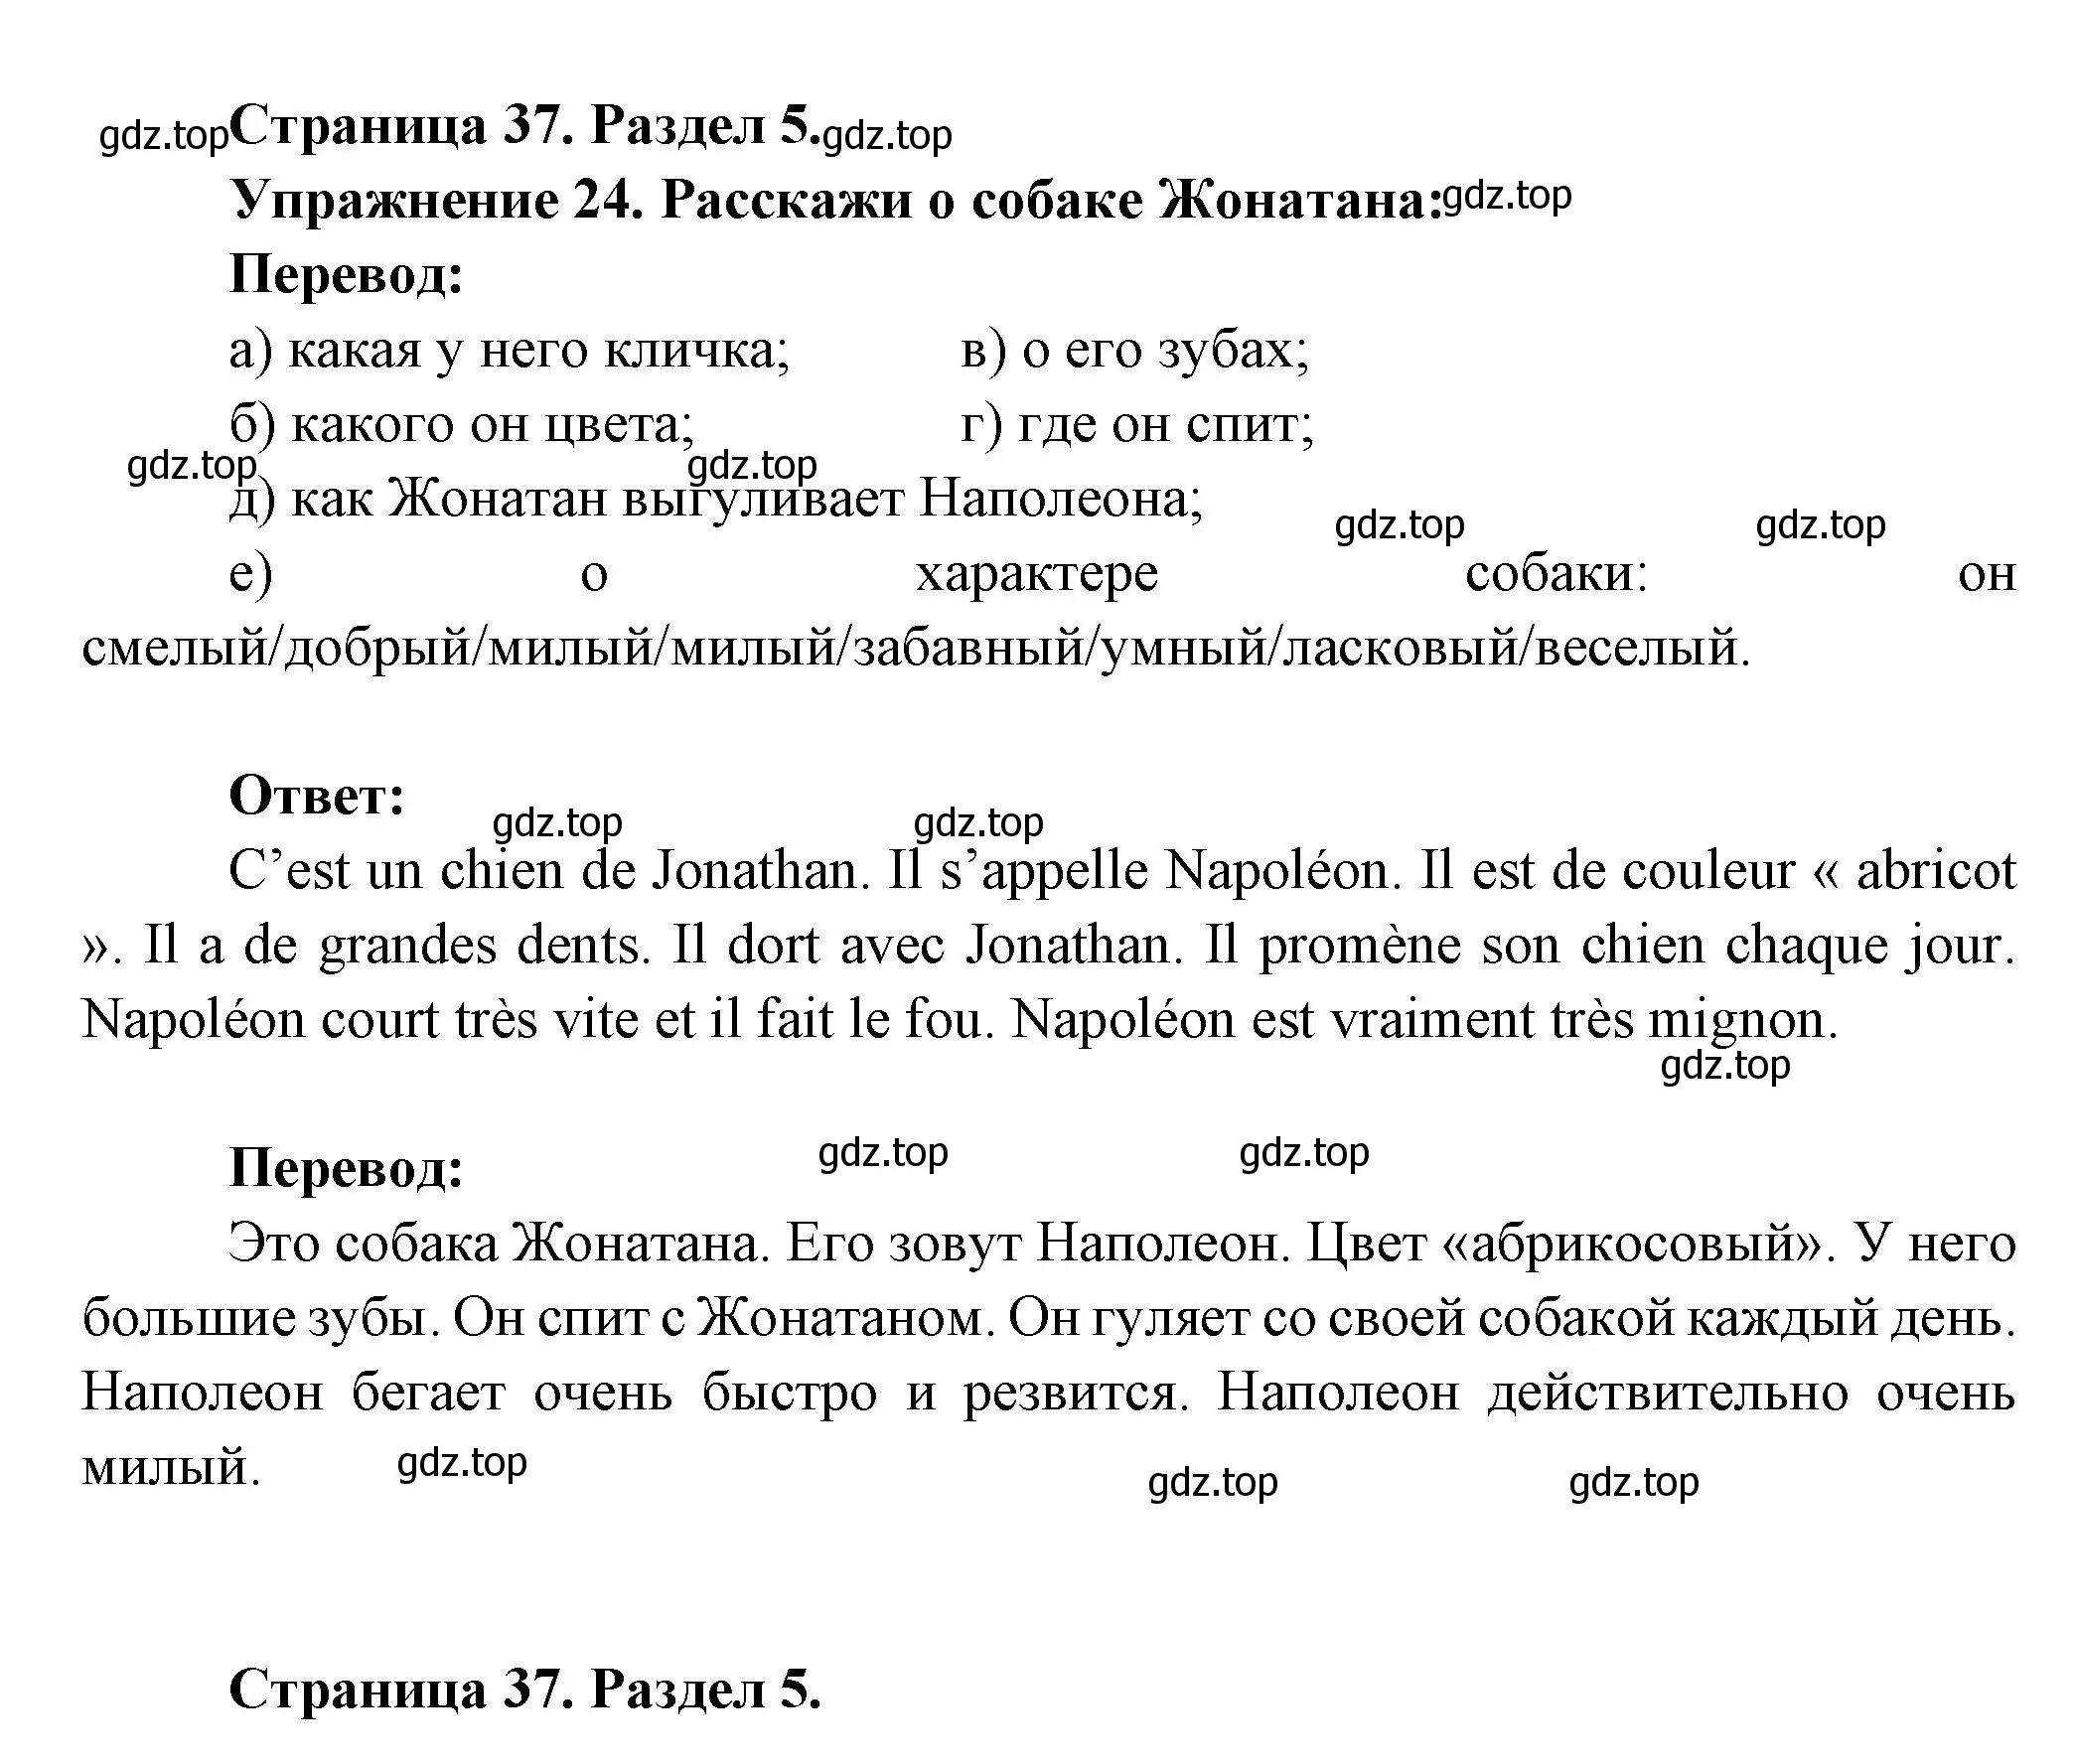 Решение номер 24 (страница 37) гдз по французскому языку 5 класс Береговская, Белосельская, учебник 2 часть